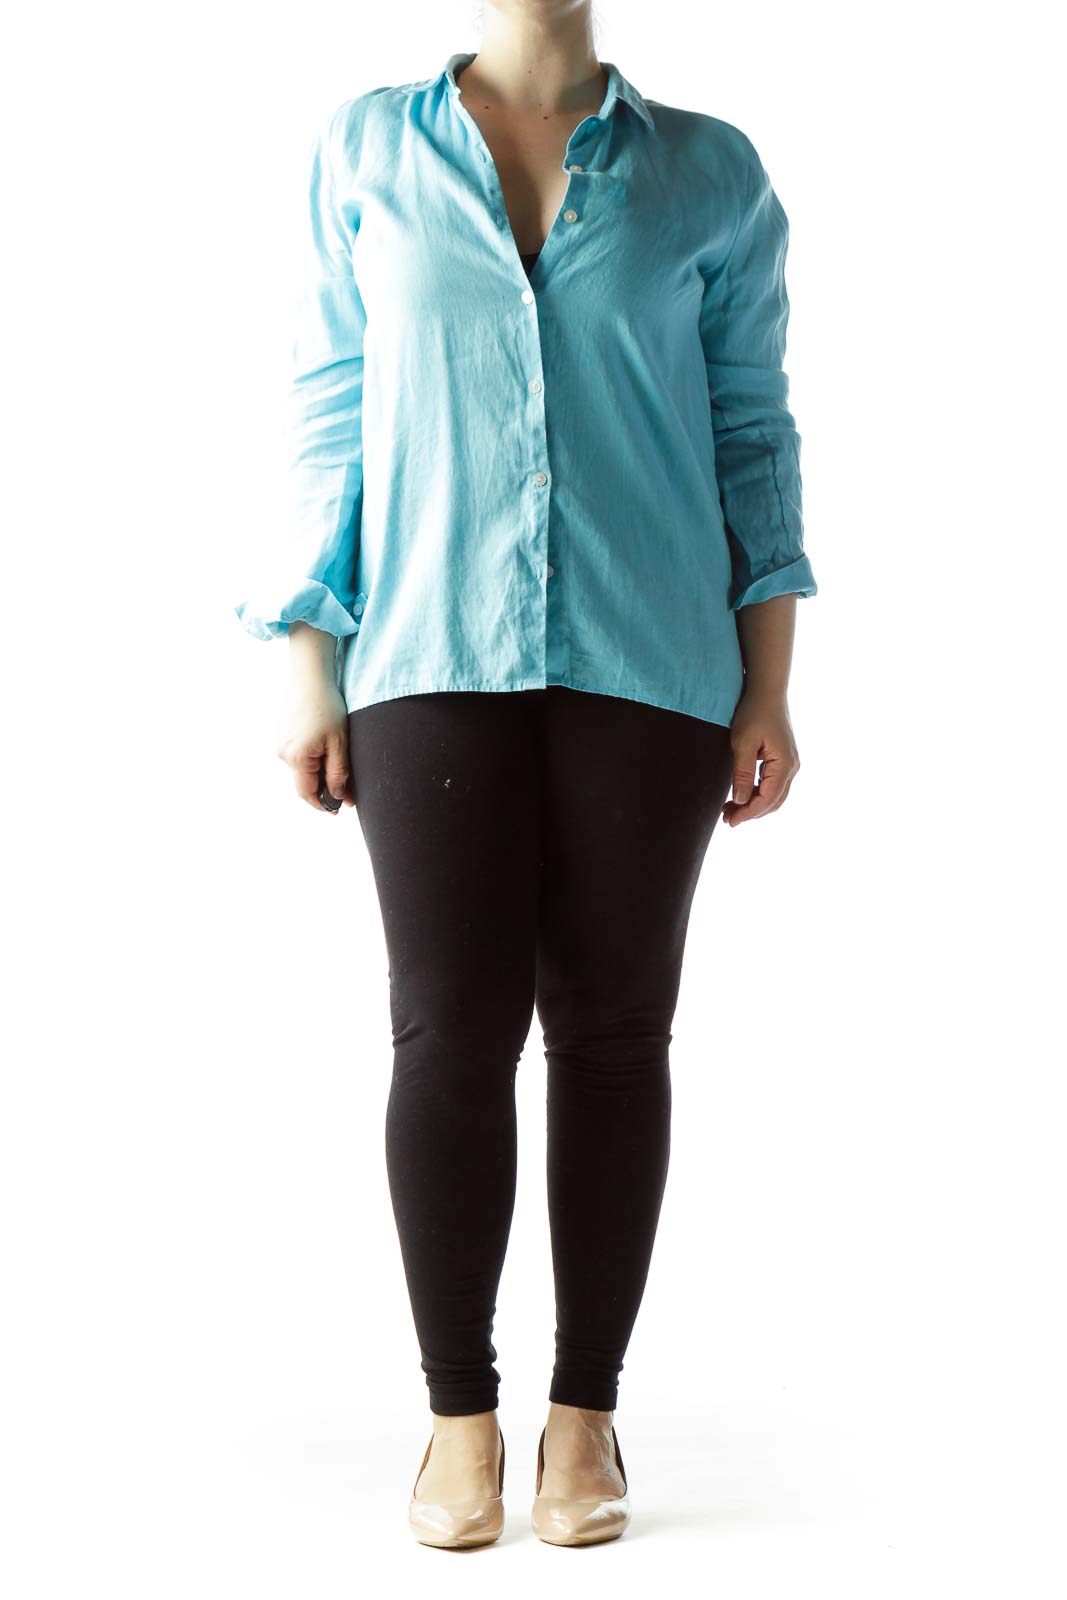 J.Jill 100% Linen Solid Blue Long Sleeve Button-Down Shirt Size XL